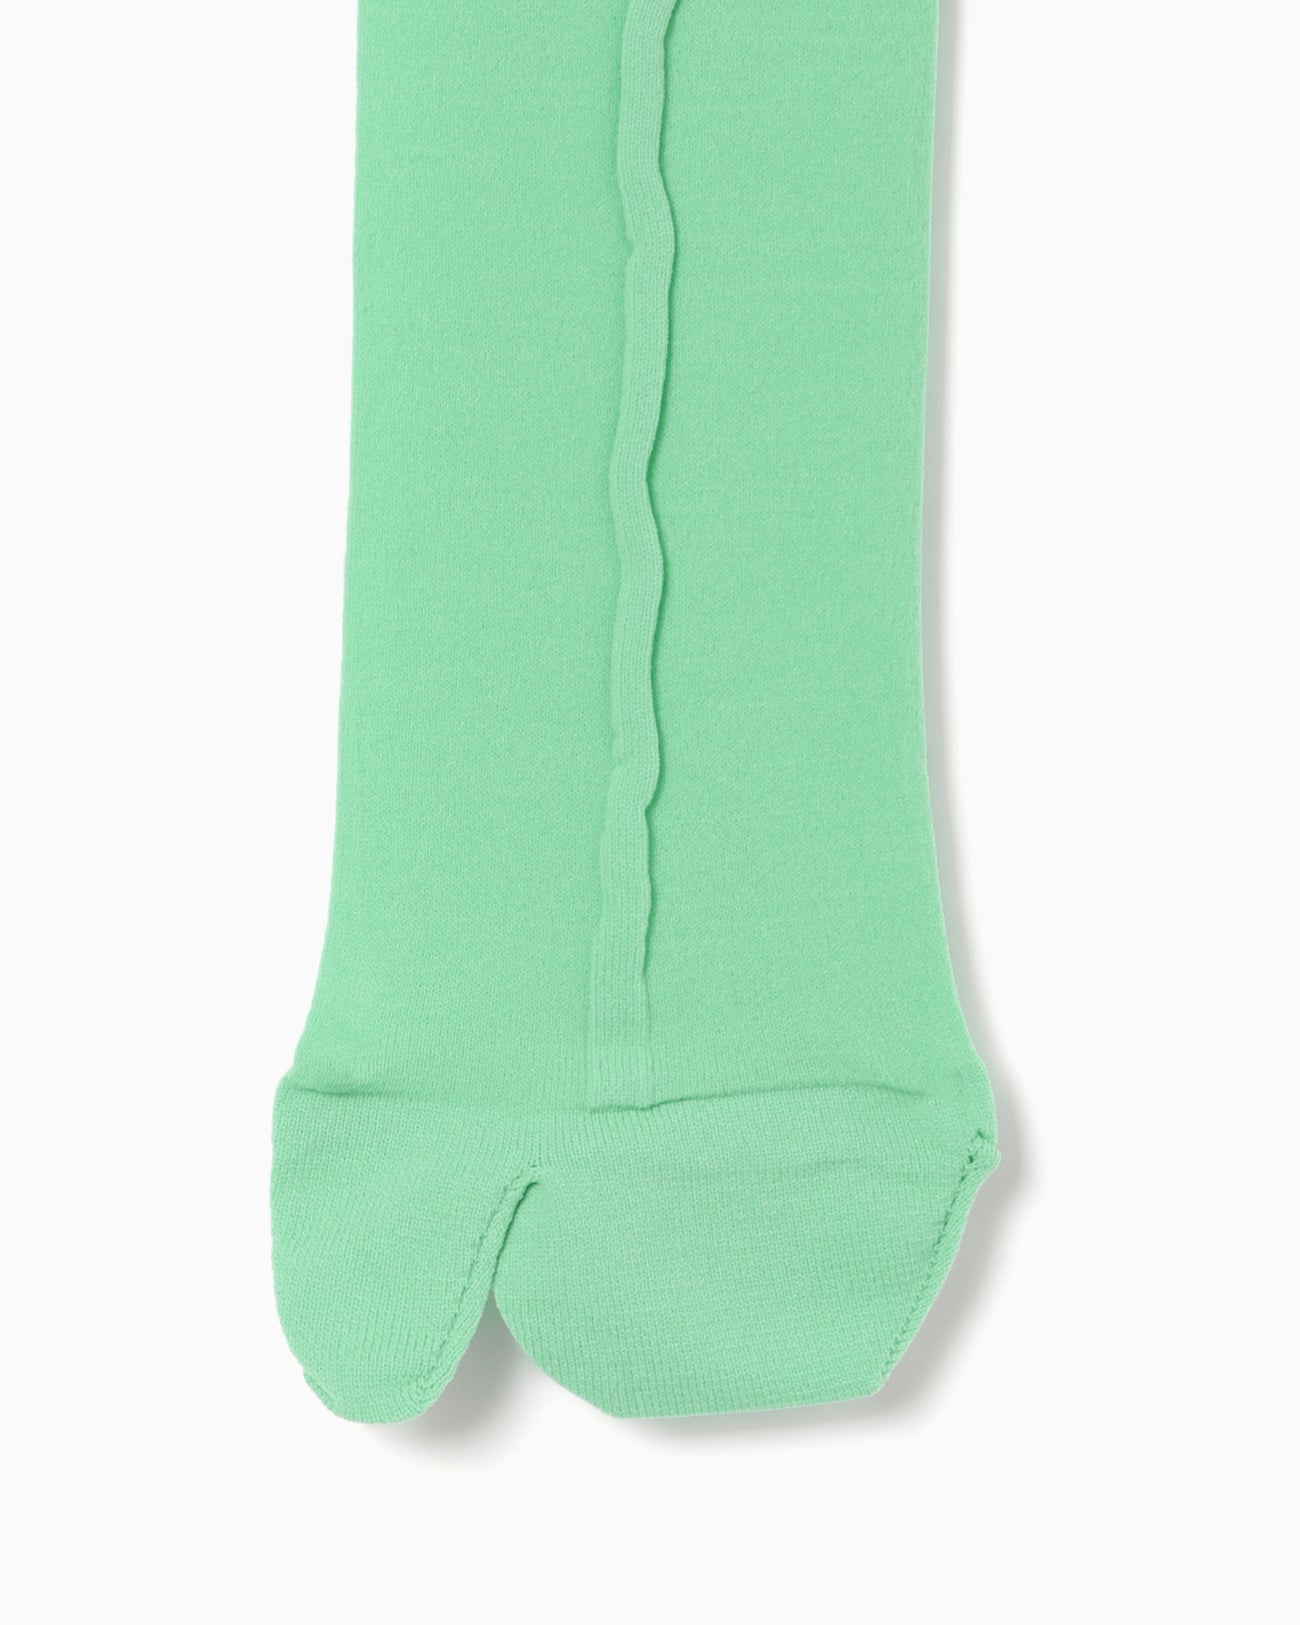 Bamboo Motif Sheer Tabi Socks - mint green